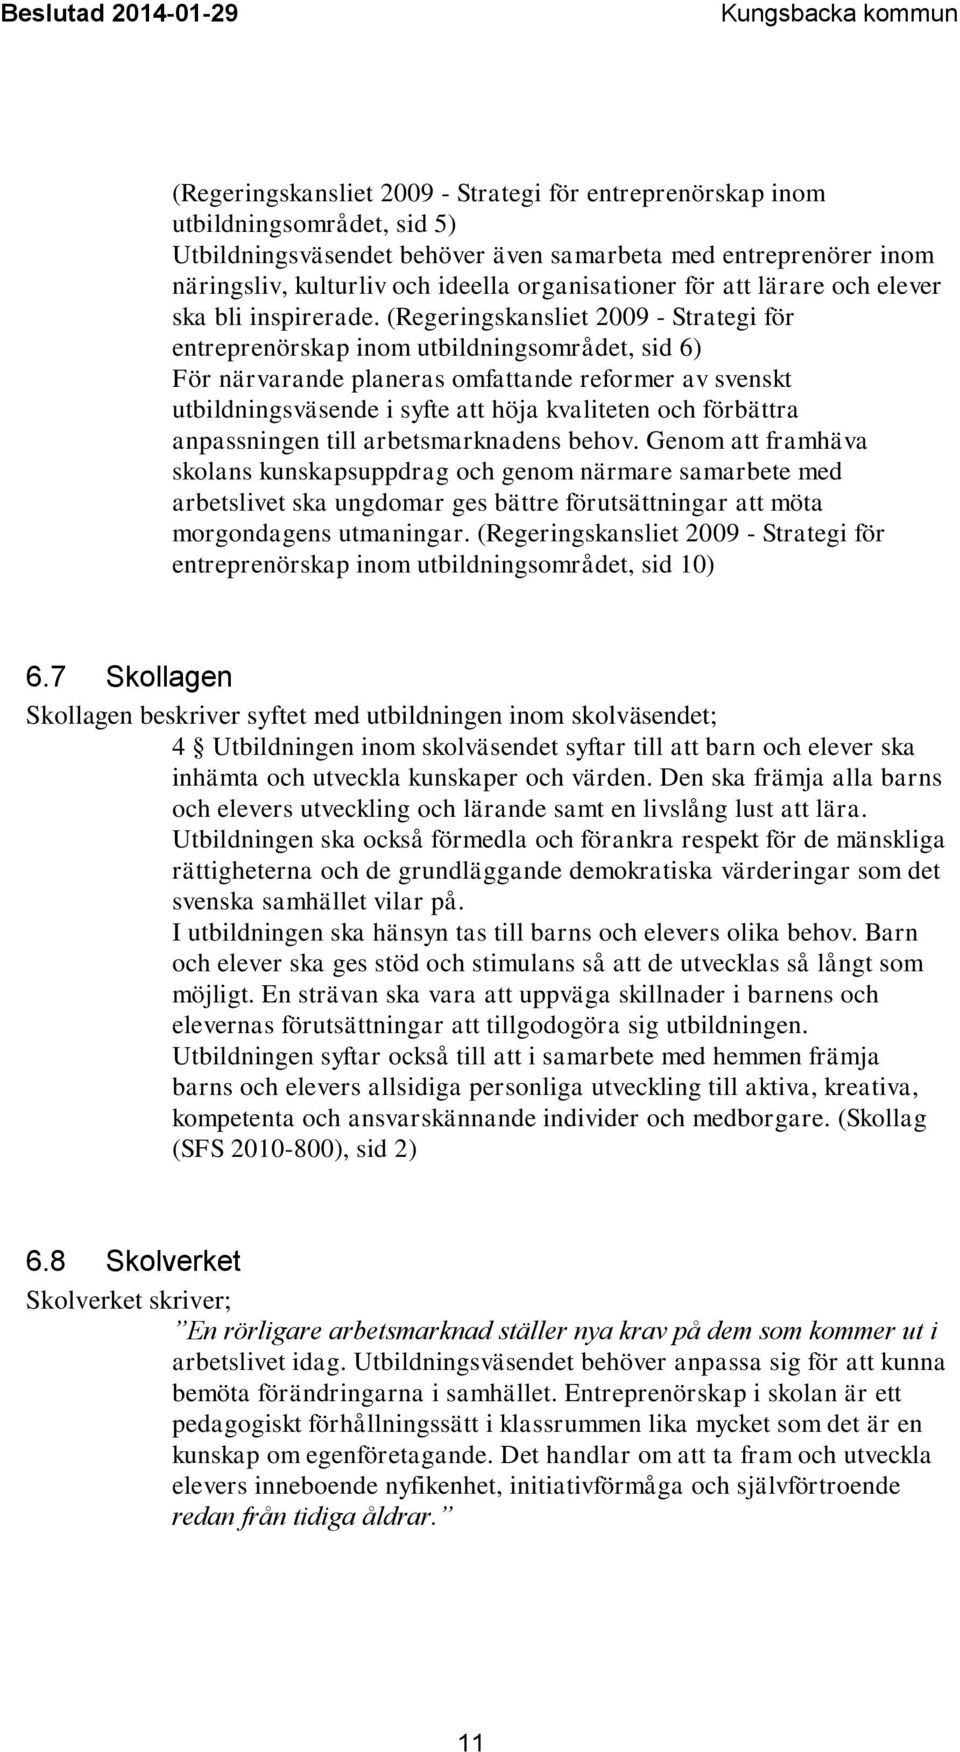 (Regeringskansliet 2009 - Strategi för entreprenörskap inom utbildningsområdet, sid 6) För närvarande planeras omfattande reformer av svenskt utbildningsväsende i syfte att höja kvaliteten och